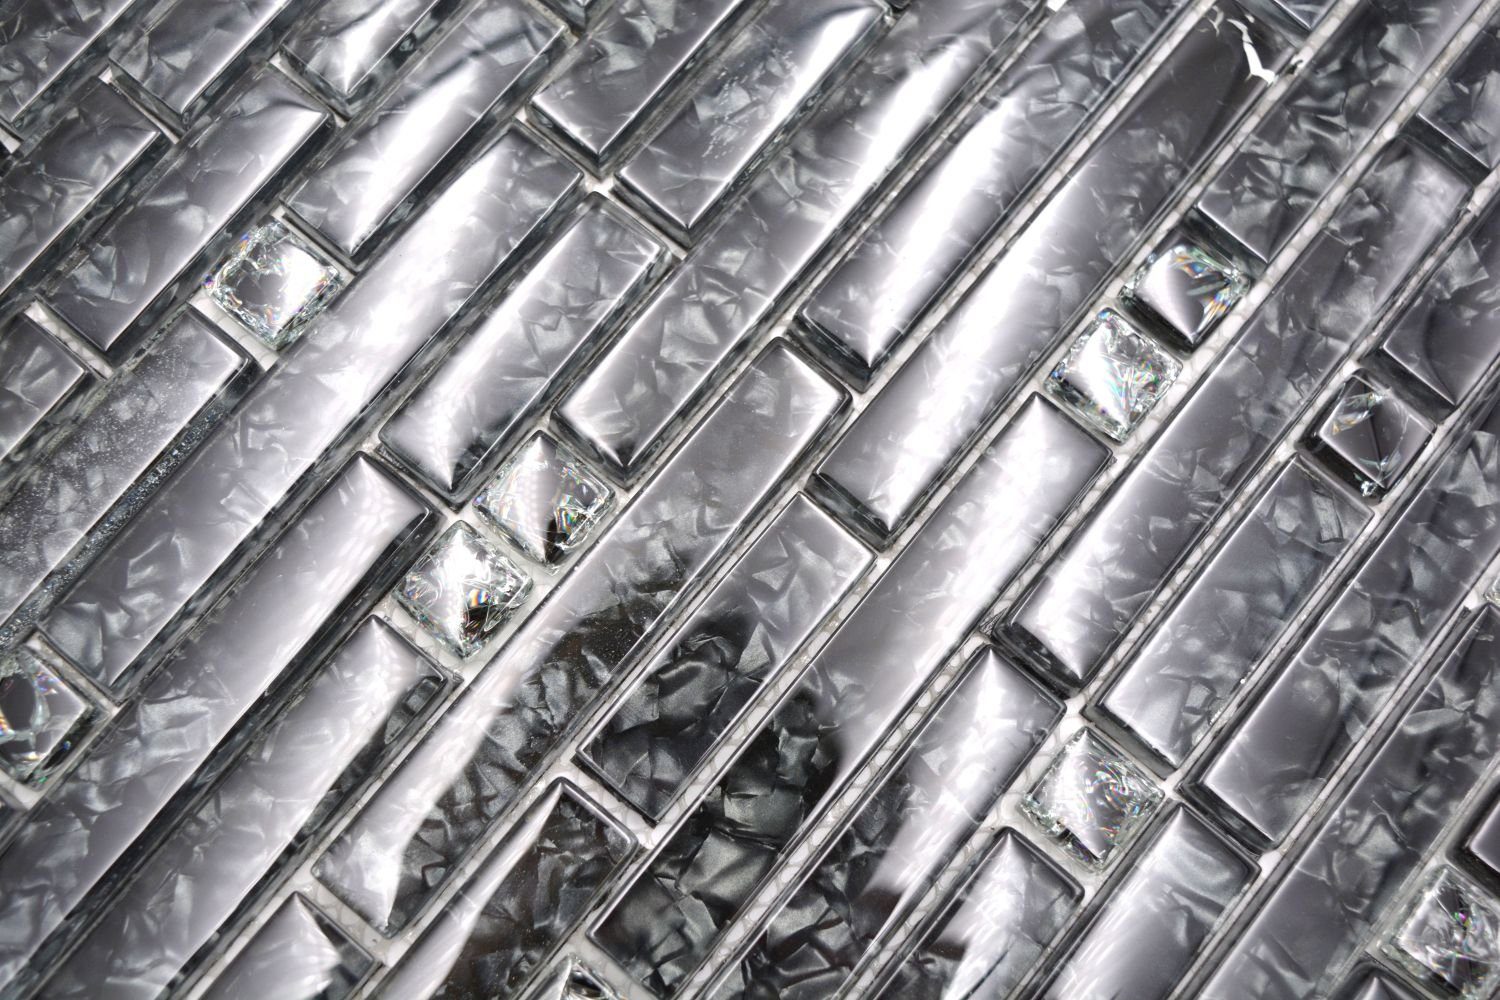 Matten schwarz / glänzend Glasmosaik Mosani Mosaikfliesen Crystal 10 Mosaikfliesen